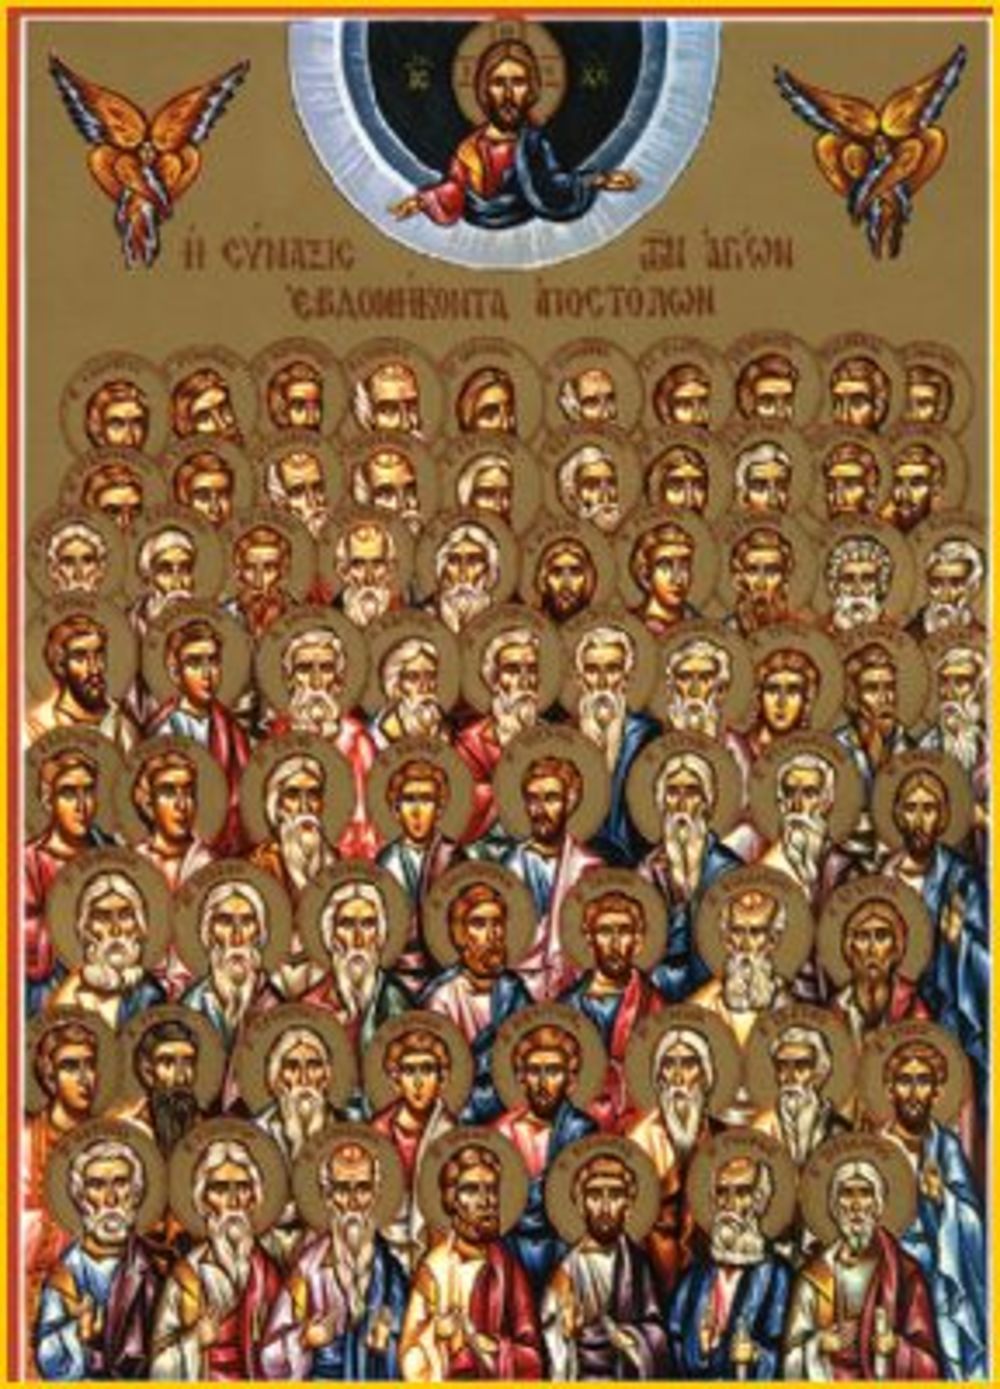 Sedamdeset drugih apostola